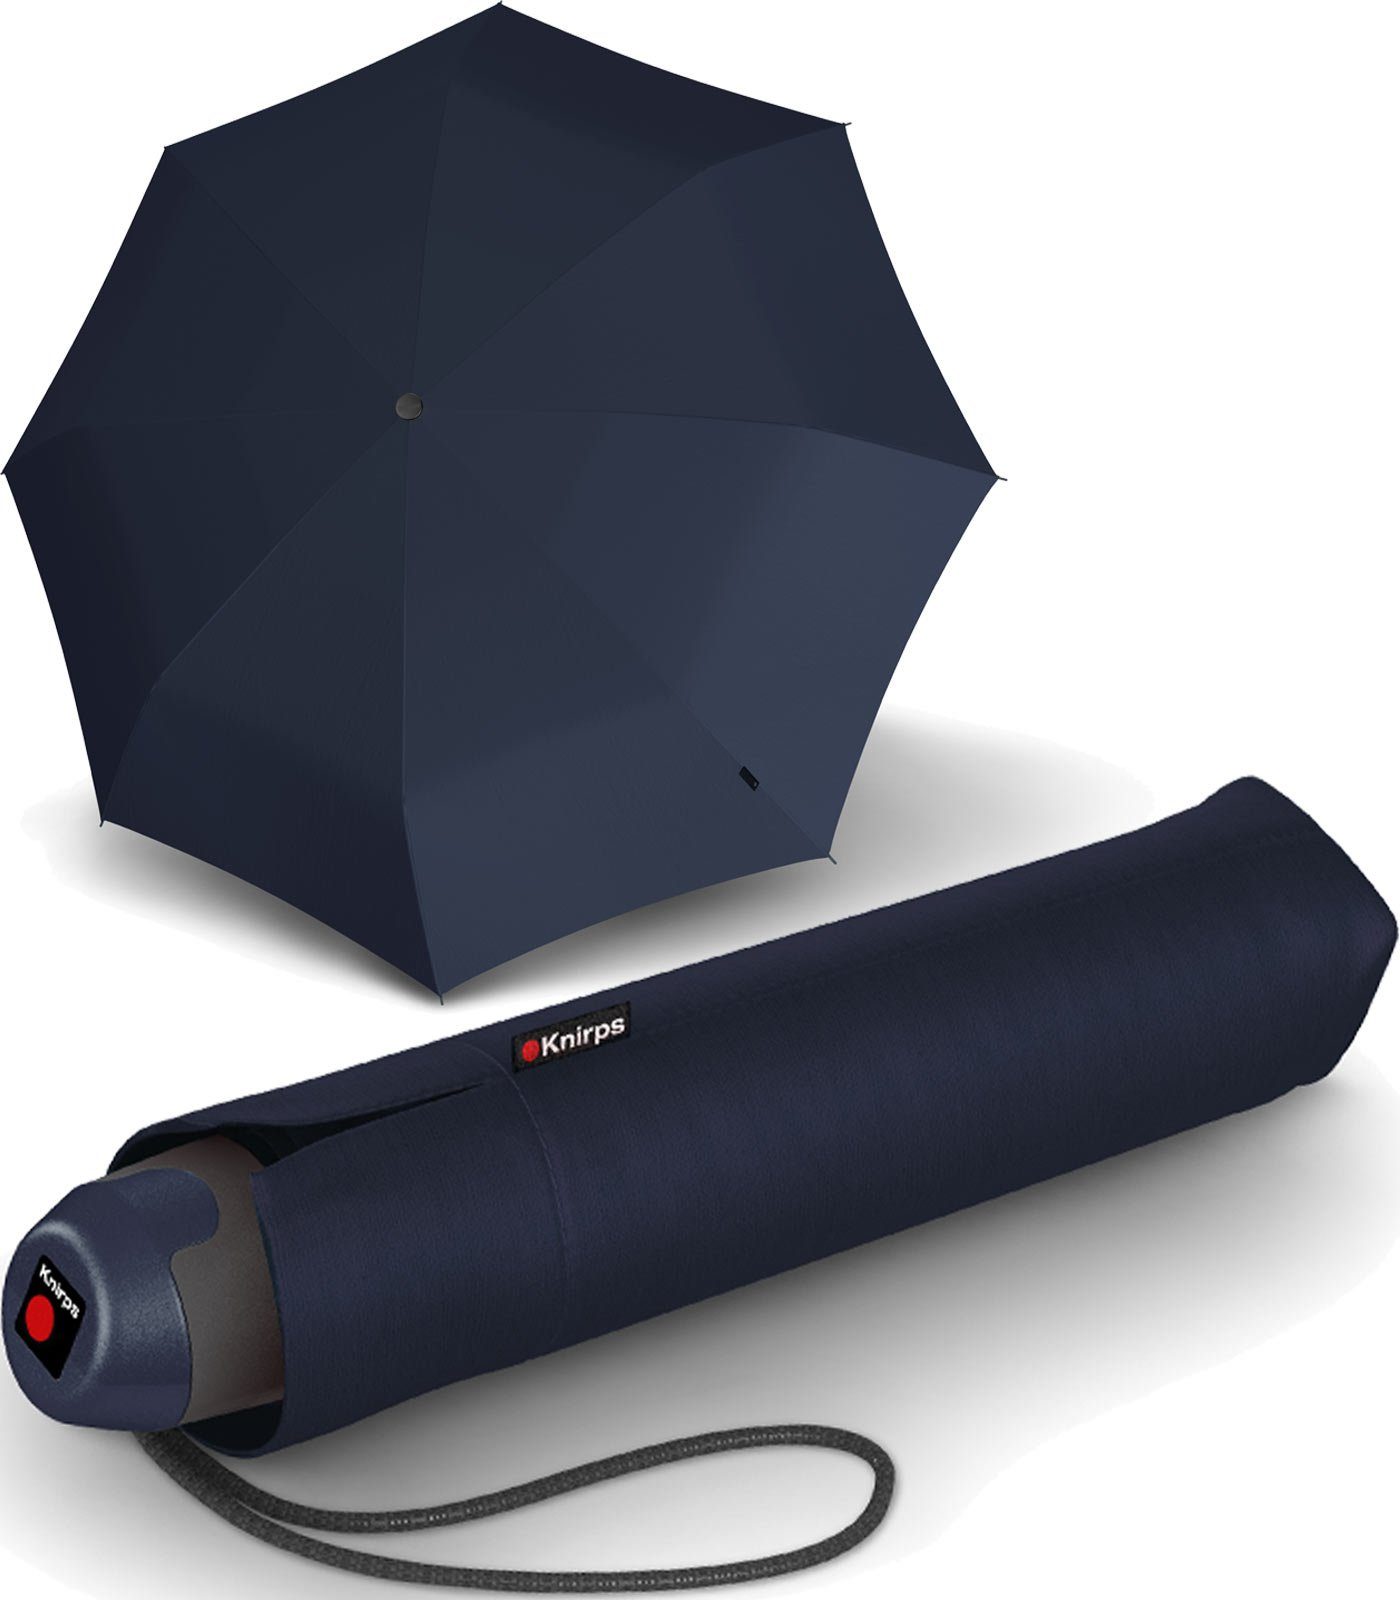 Knirps® Taschenregenschirm stabiler, leichter Schirm mit manueller Öffnung, mit eleganter Geschenkverpackung navy